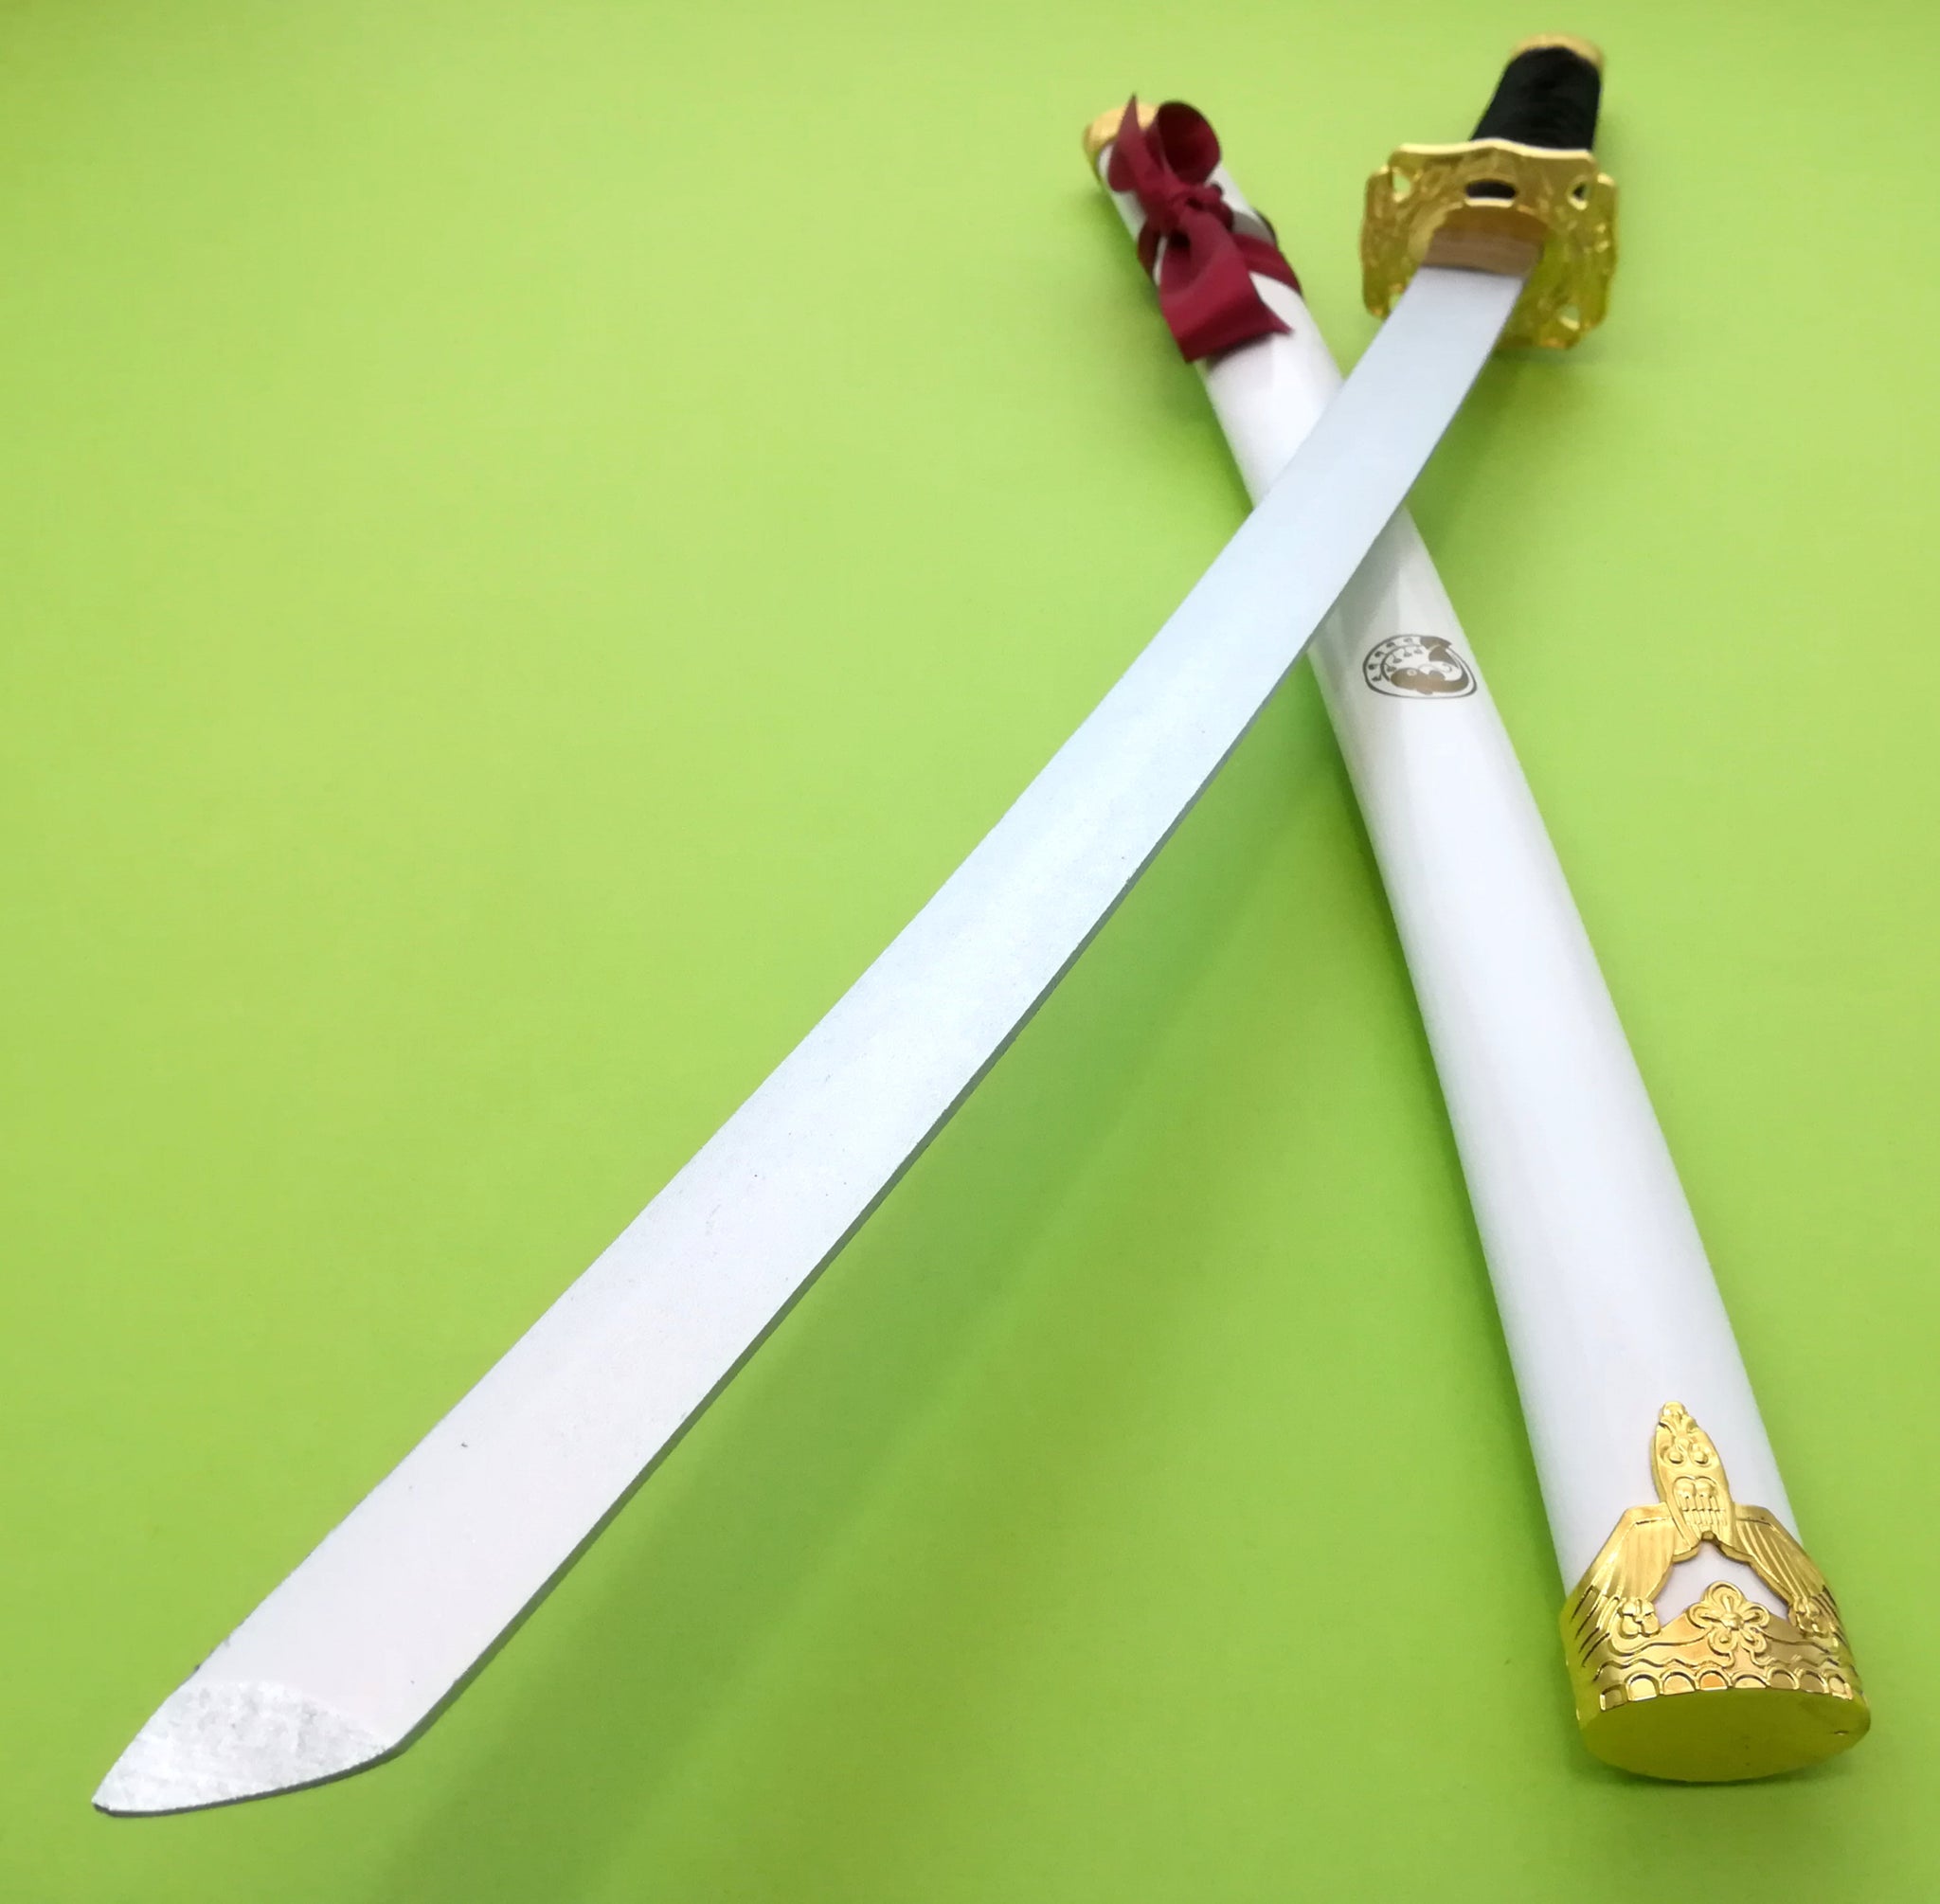 鯰尾藤四郎 78cm なまずお とうしろう 模造刀 武士刀 木製 木 コスプレ 